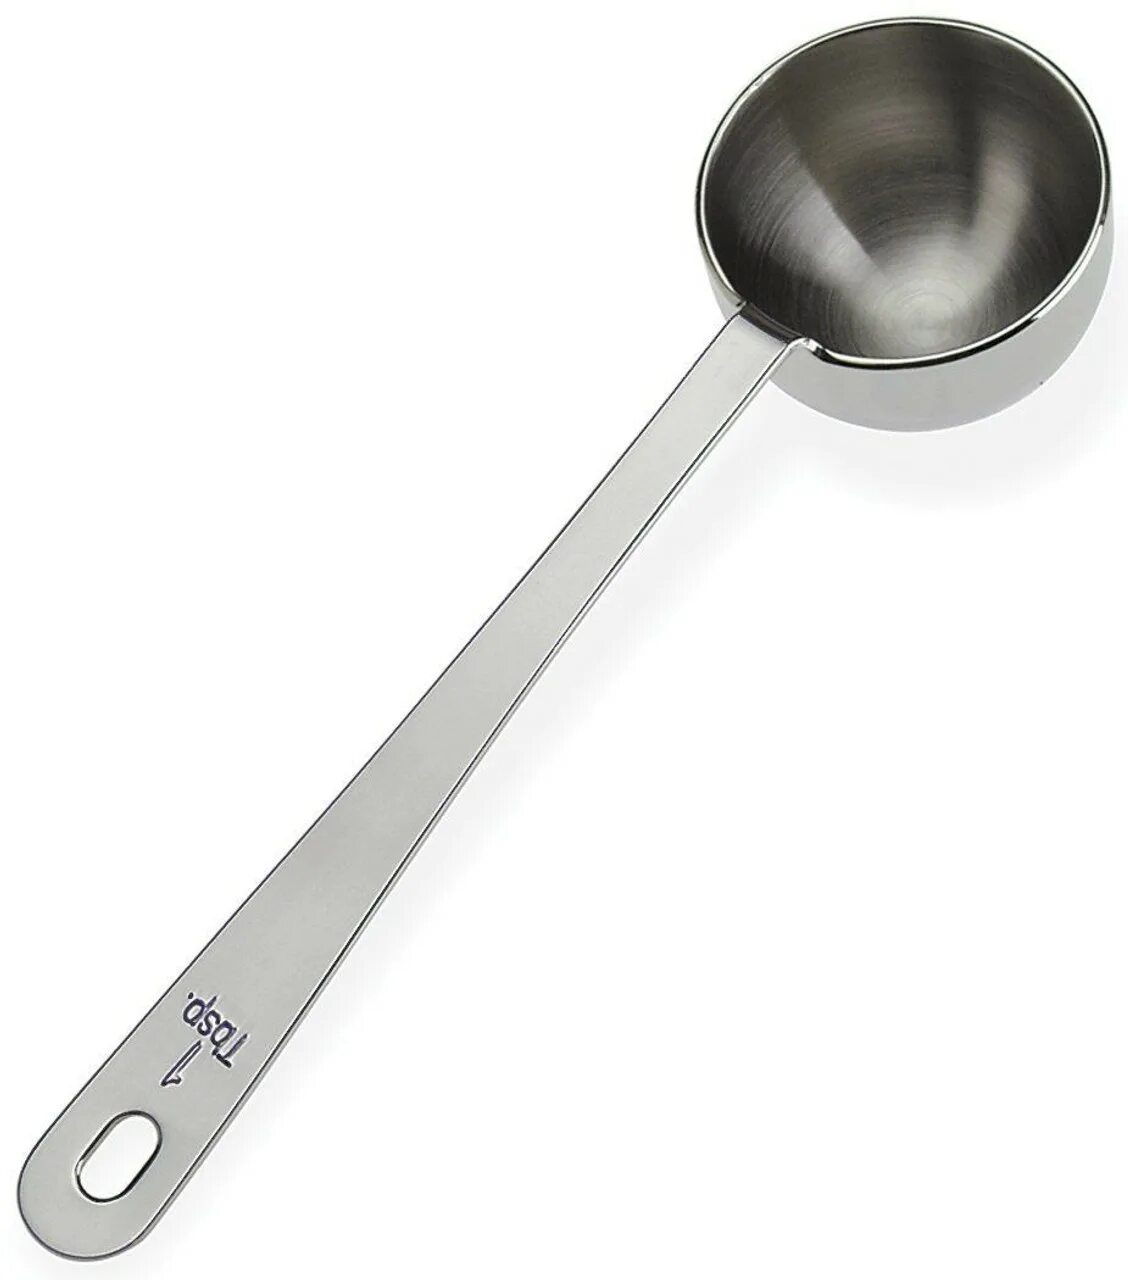 Мерная ложка 10 гр. Ложка Scoop 2 tablespoon Clover. Stainless Steel ложки. Мерная ложка для кофе.